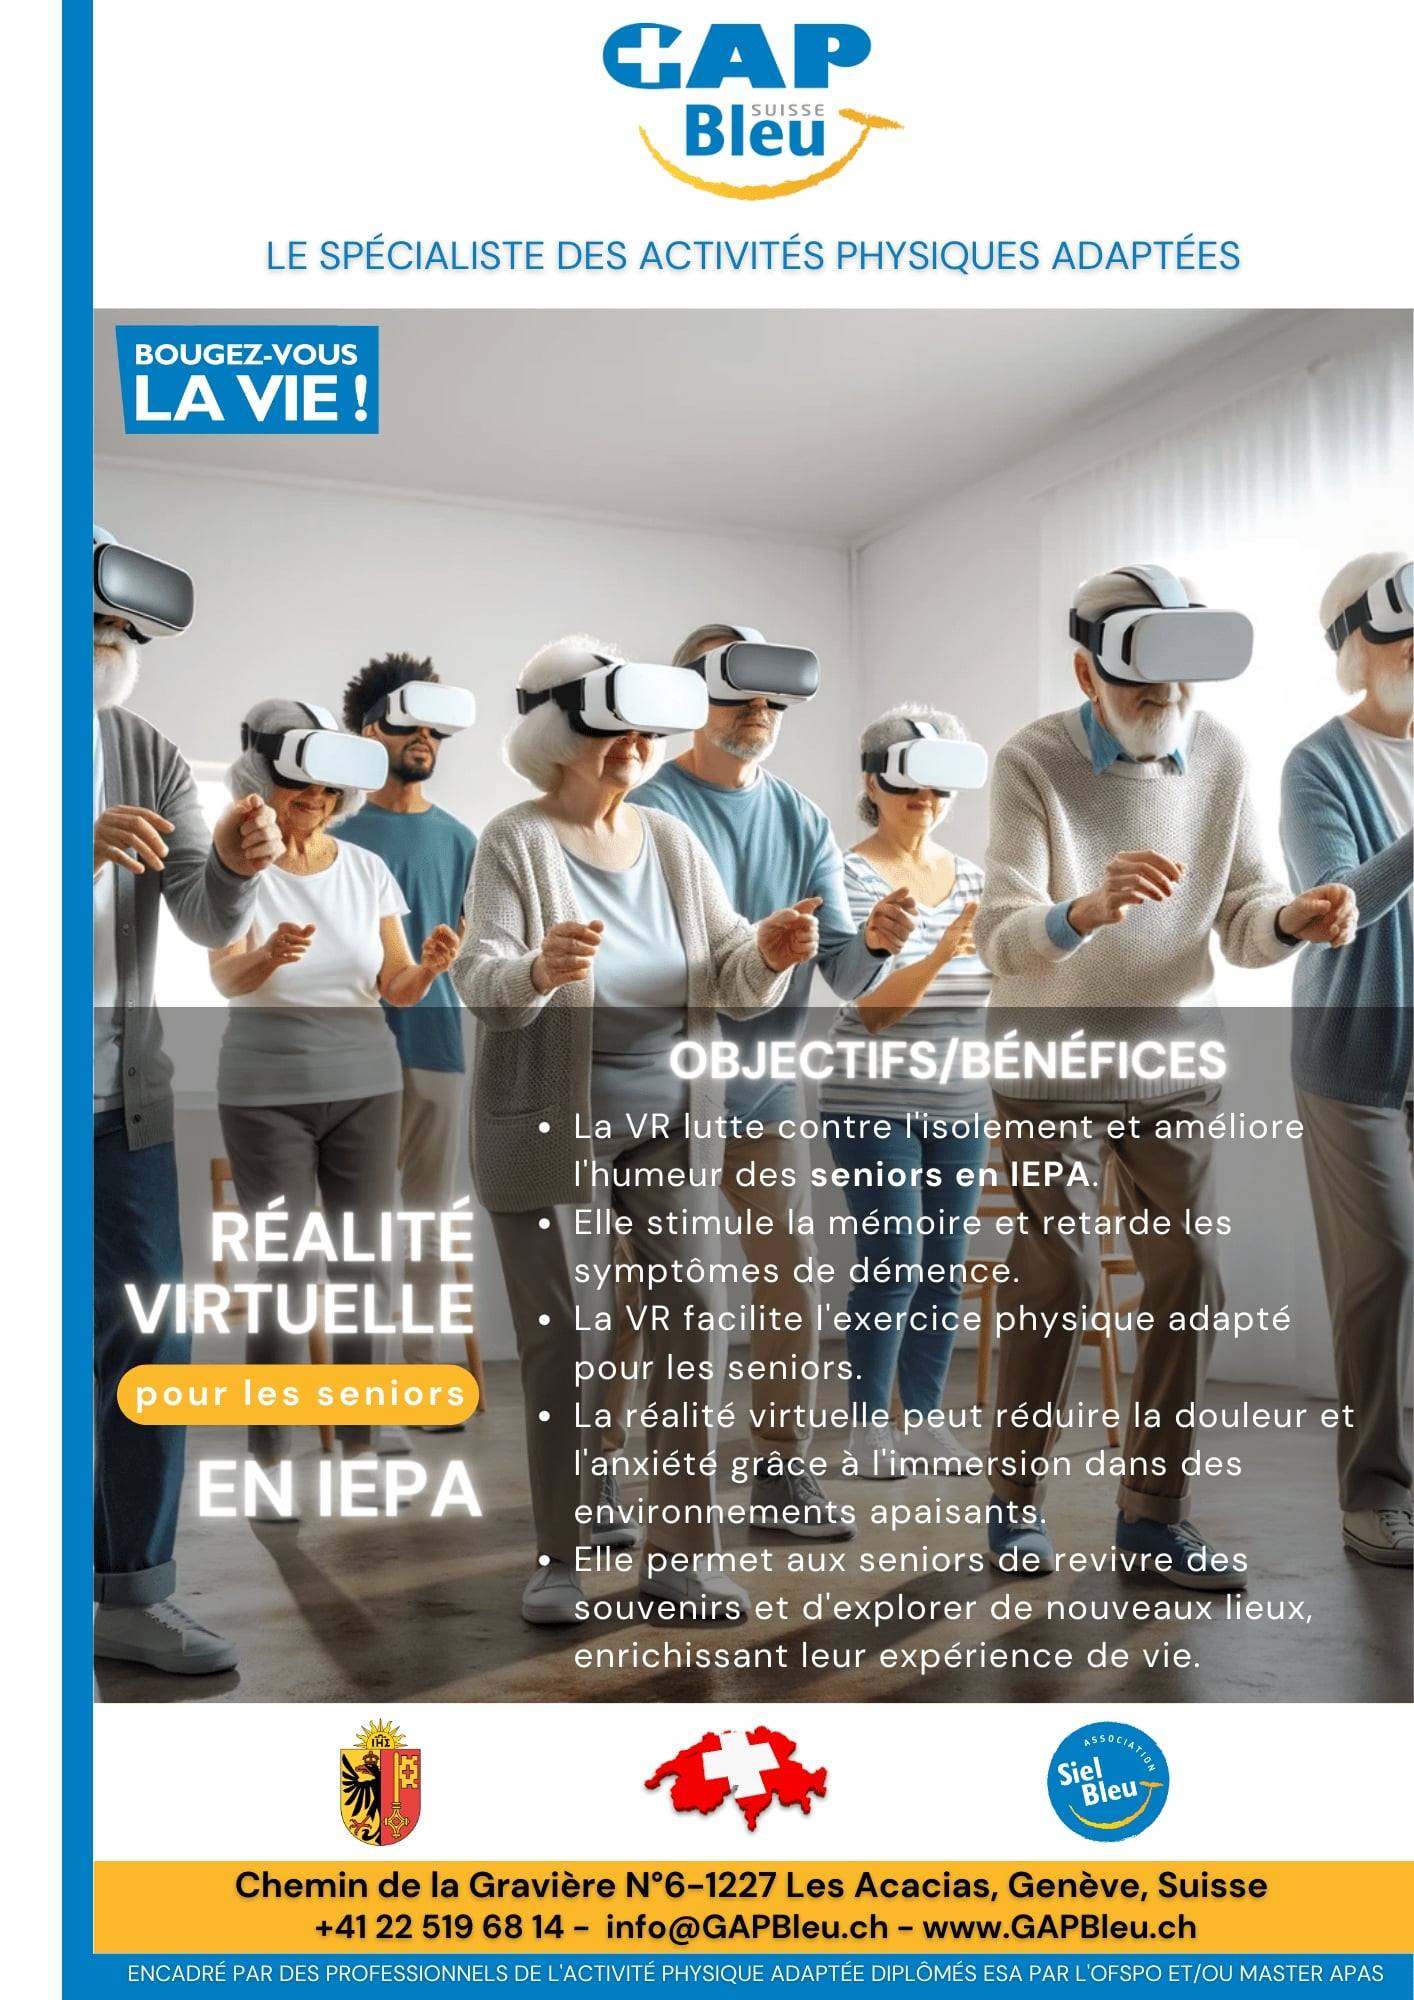 Réalité virtuelle pour les seniors en IEPA